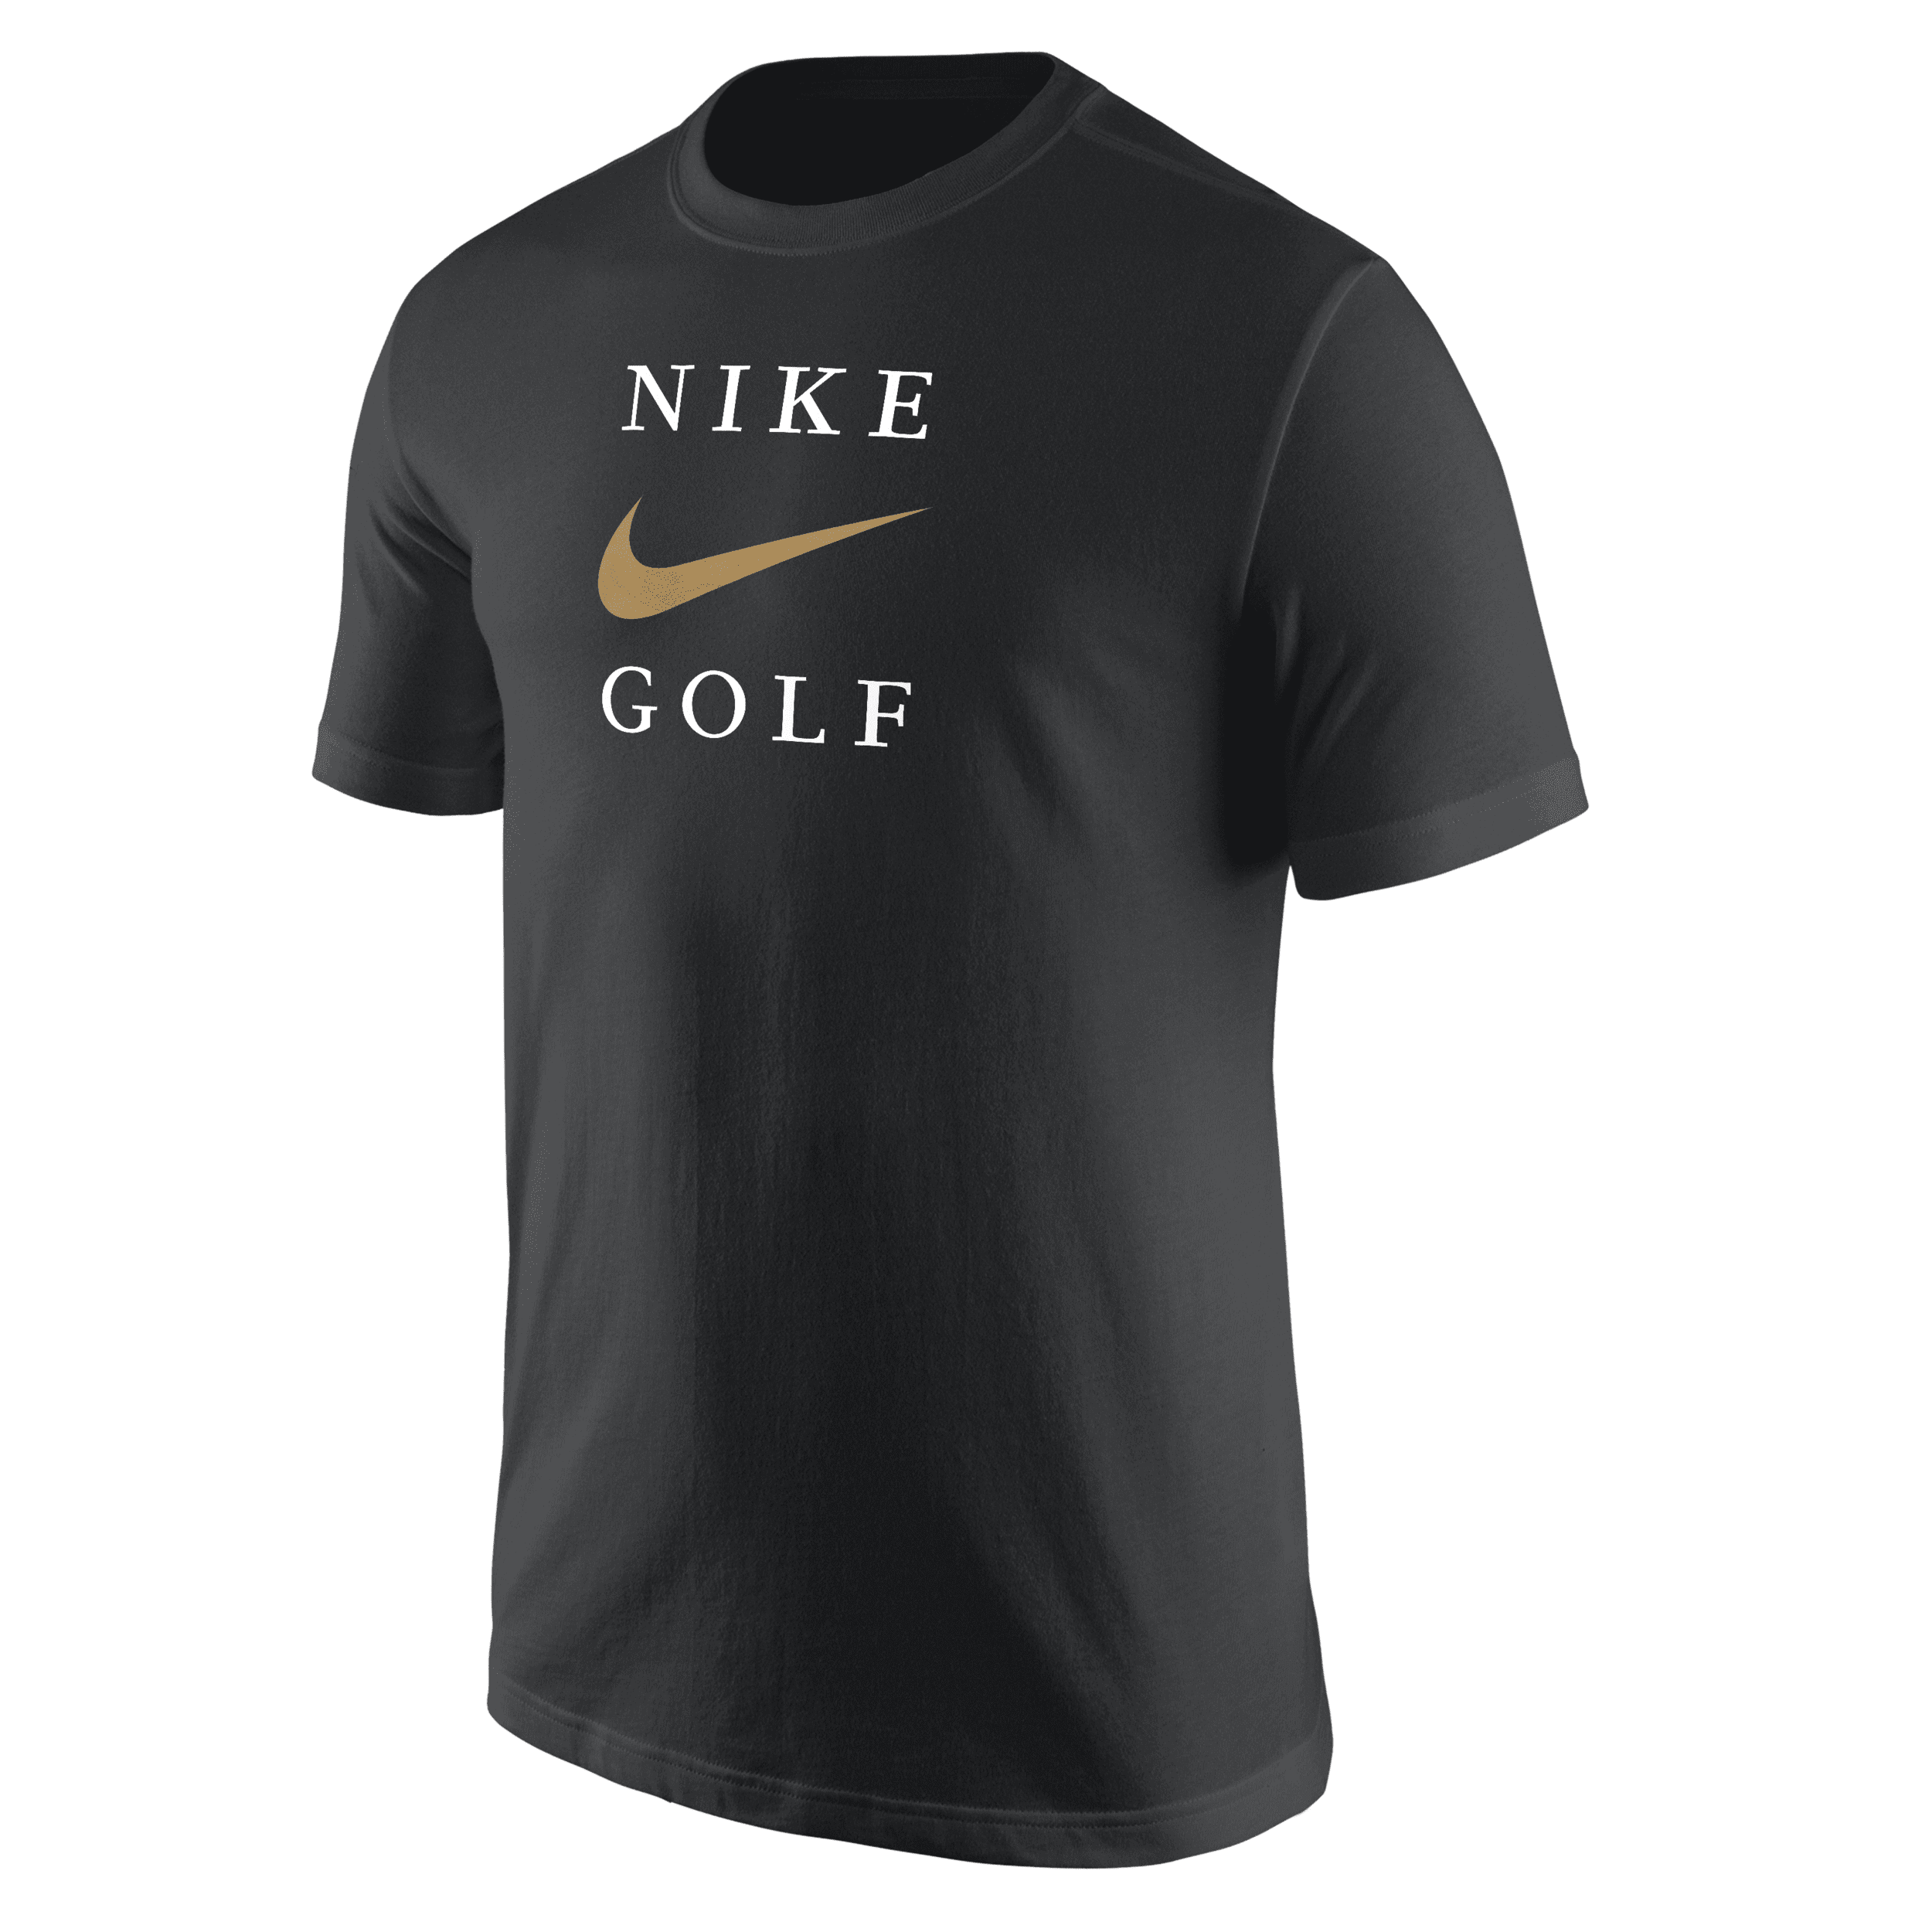 Nike Men's Golf T-shirt In Black